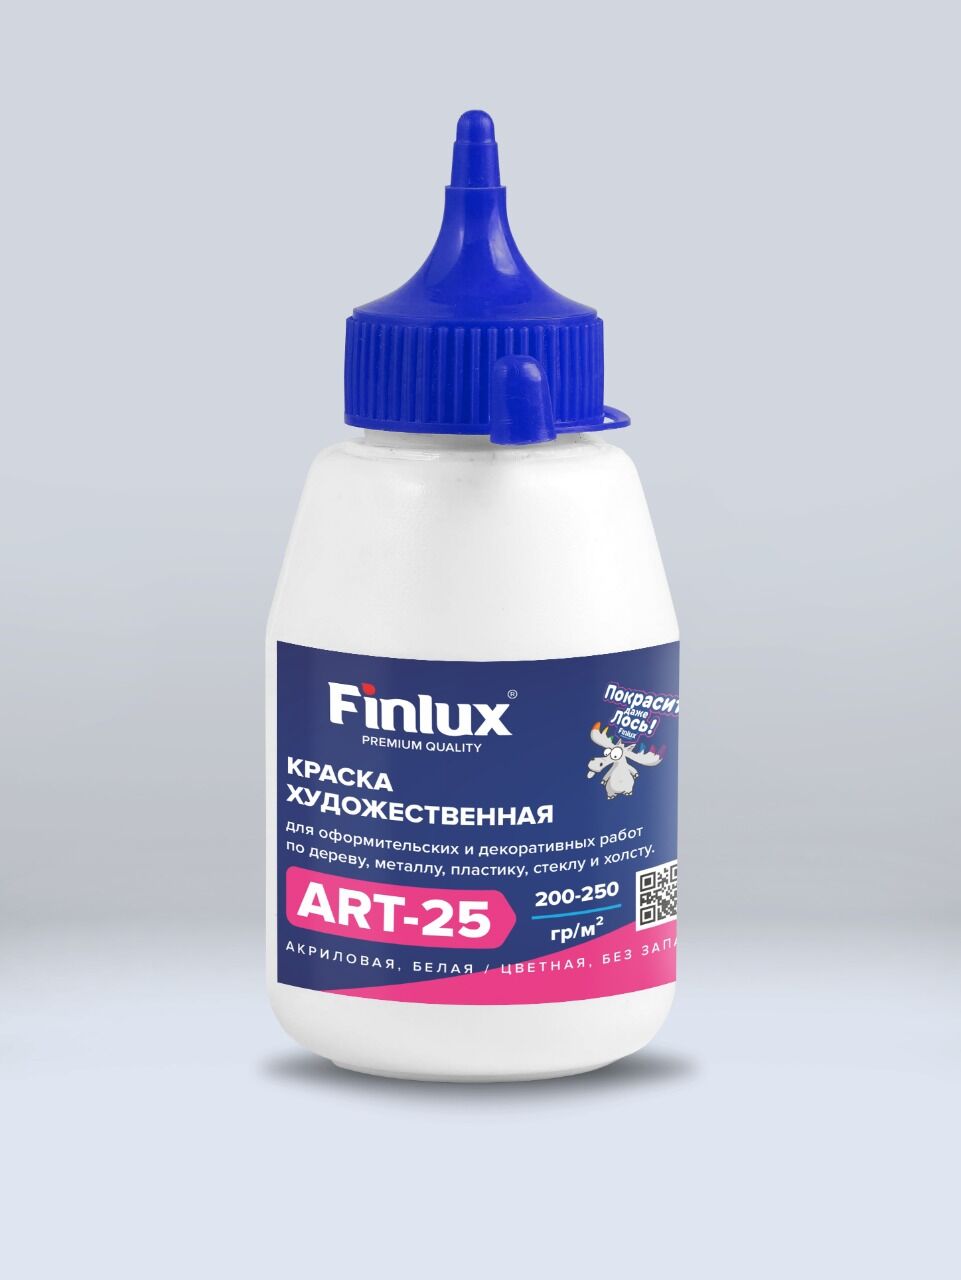 Акриловая краска художественная для рисования Коричневый, 0,3 кг Finlux ART 25 –матовая